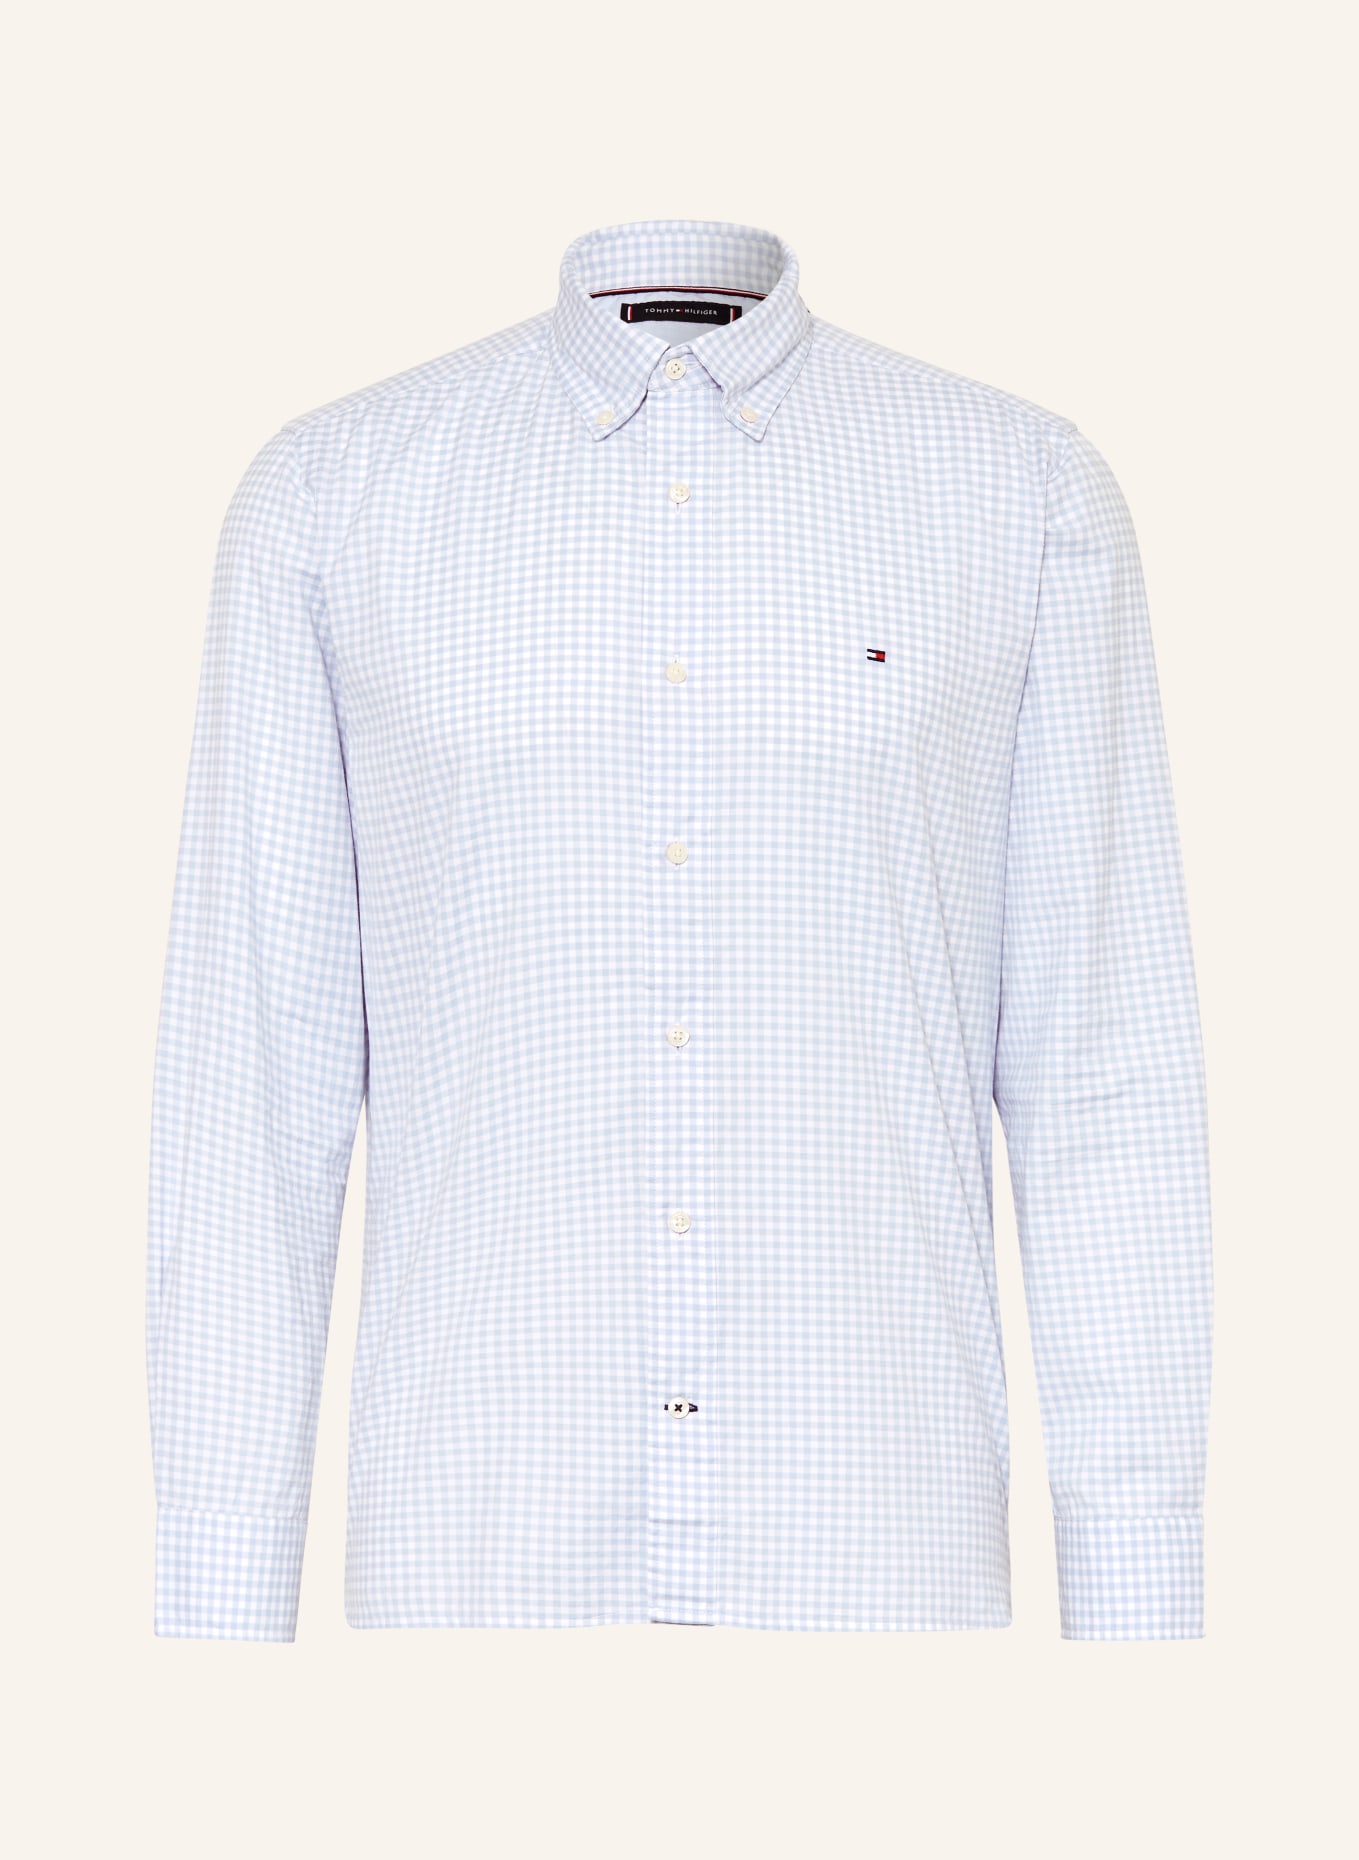 TOMMY HILFIGER Shirt regular fit, Color: LIGHT BLUE/ WHITE (Image 1)